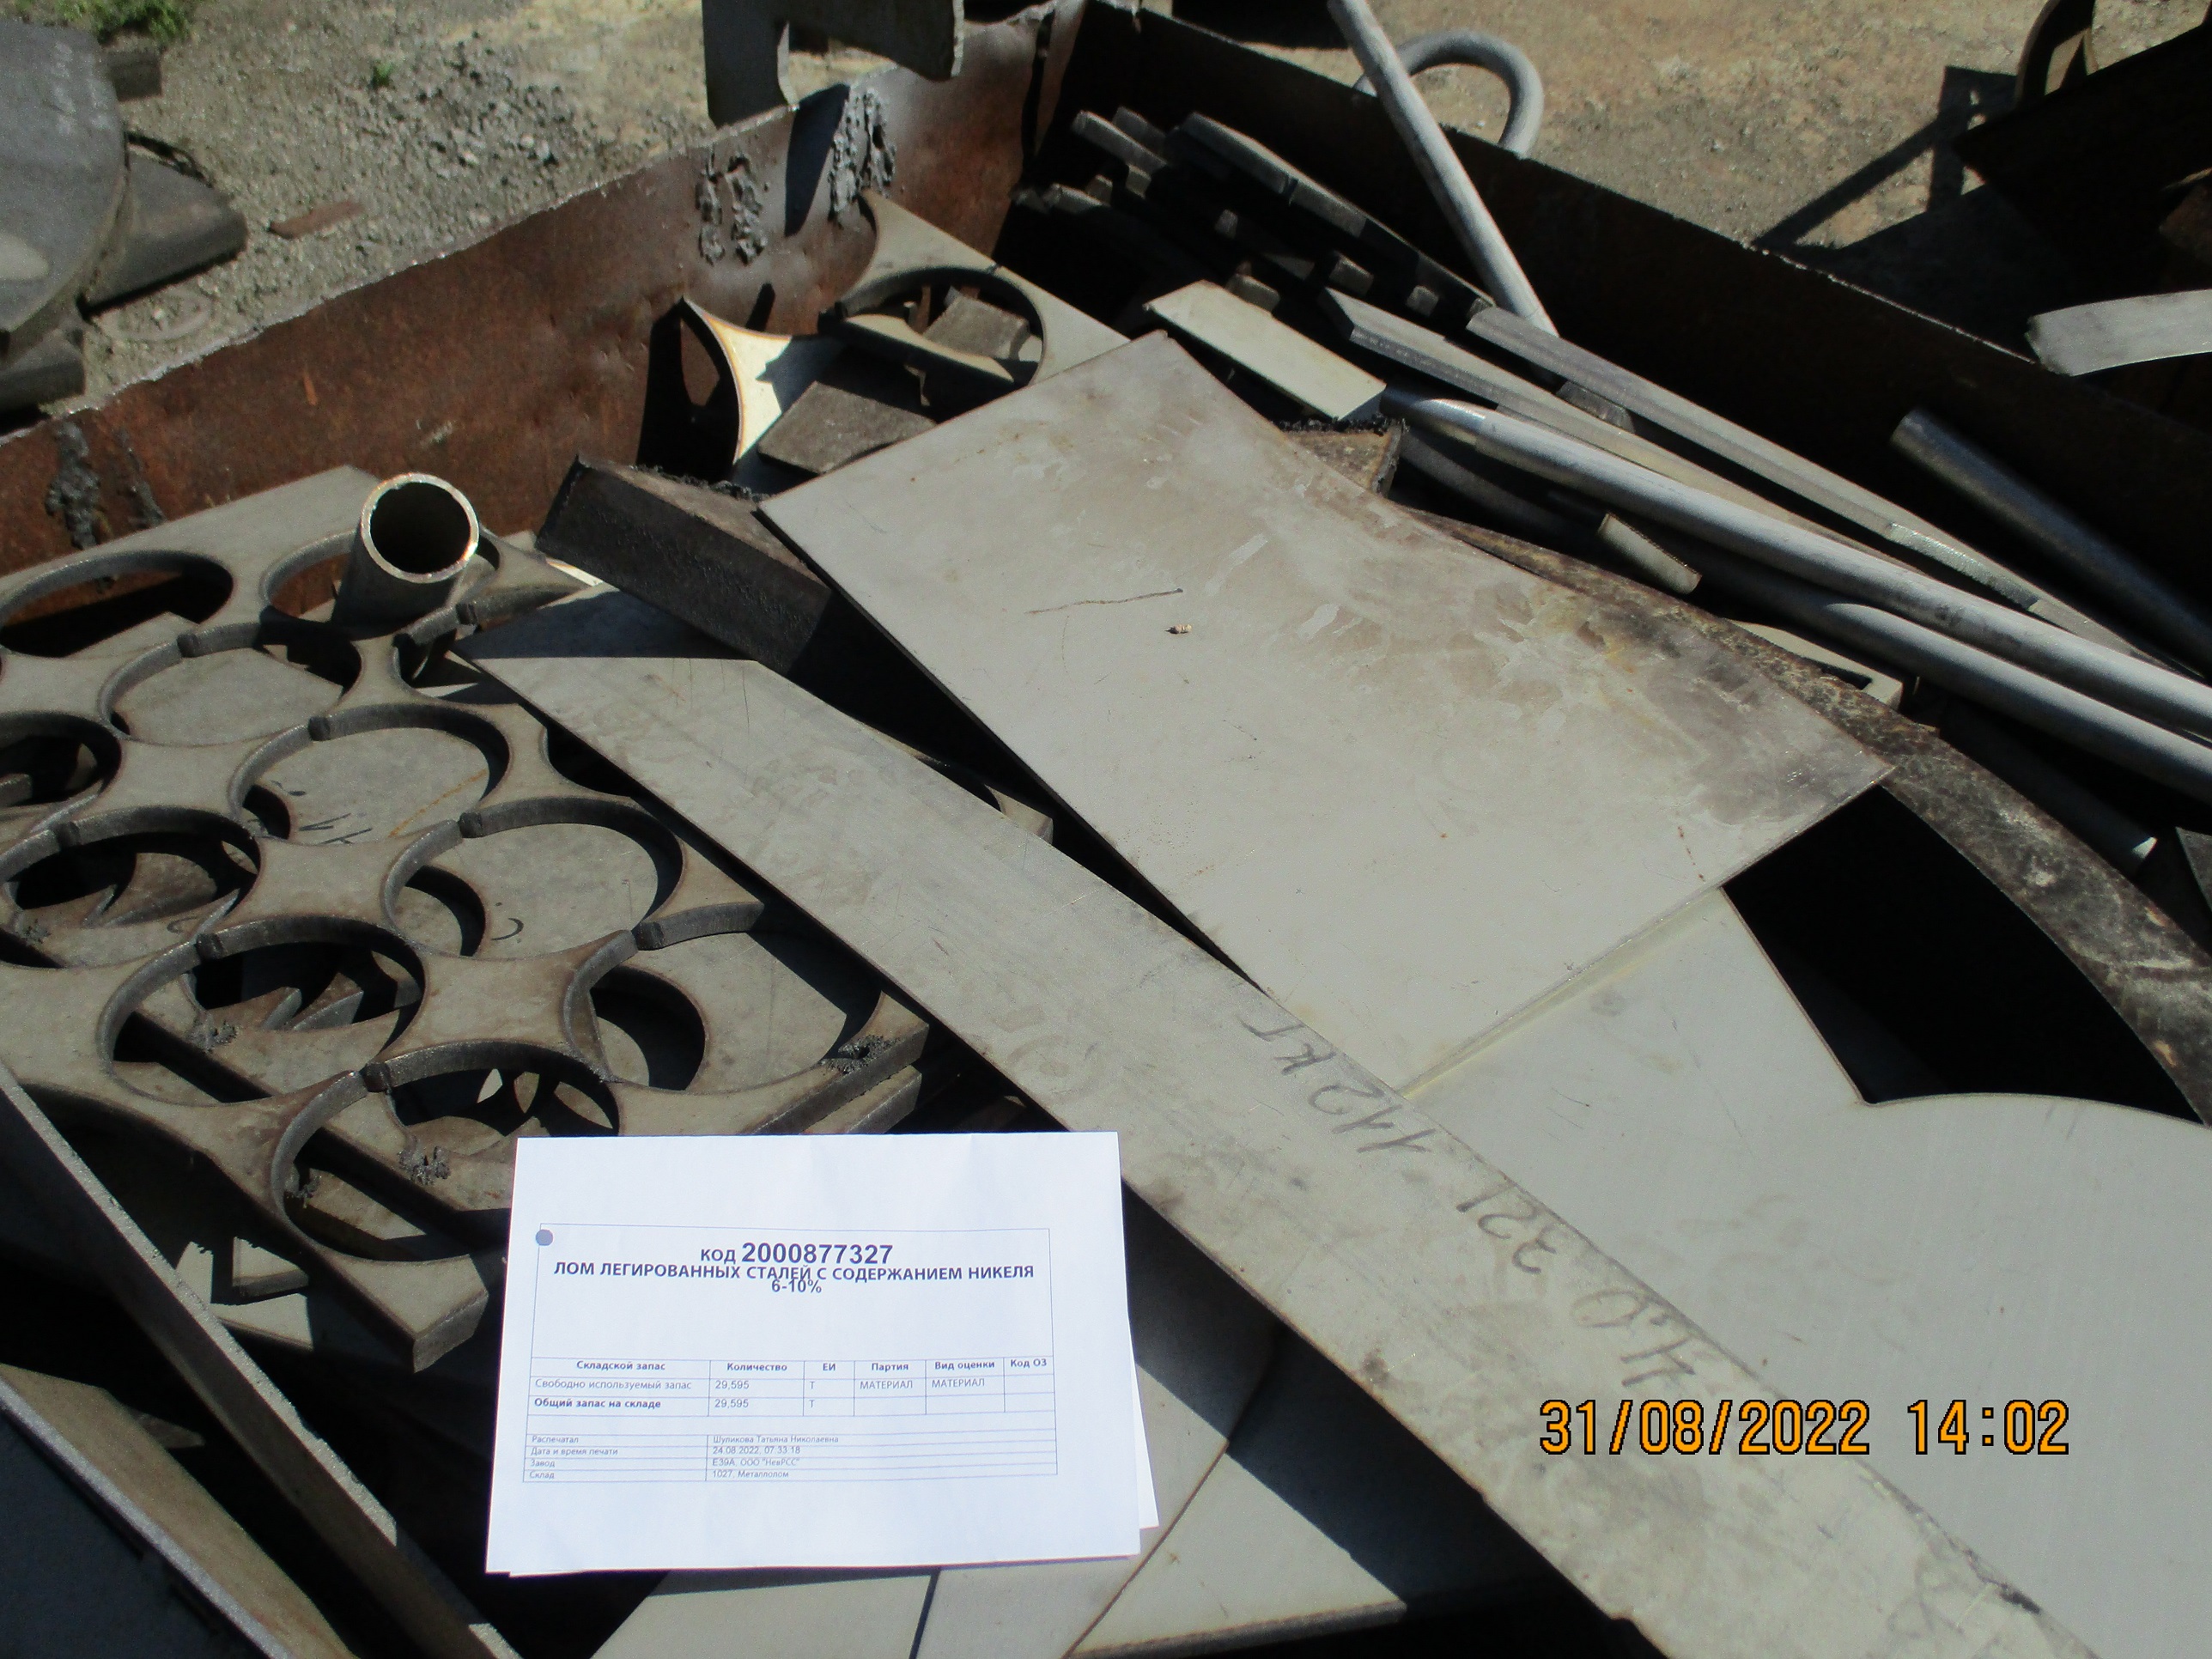 183942 - Реализация лома легированных сталей с содержанием никеля 6-10% ООО "НевРСС"-1